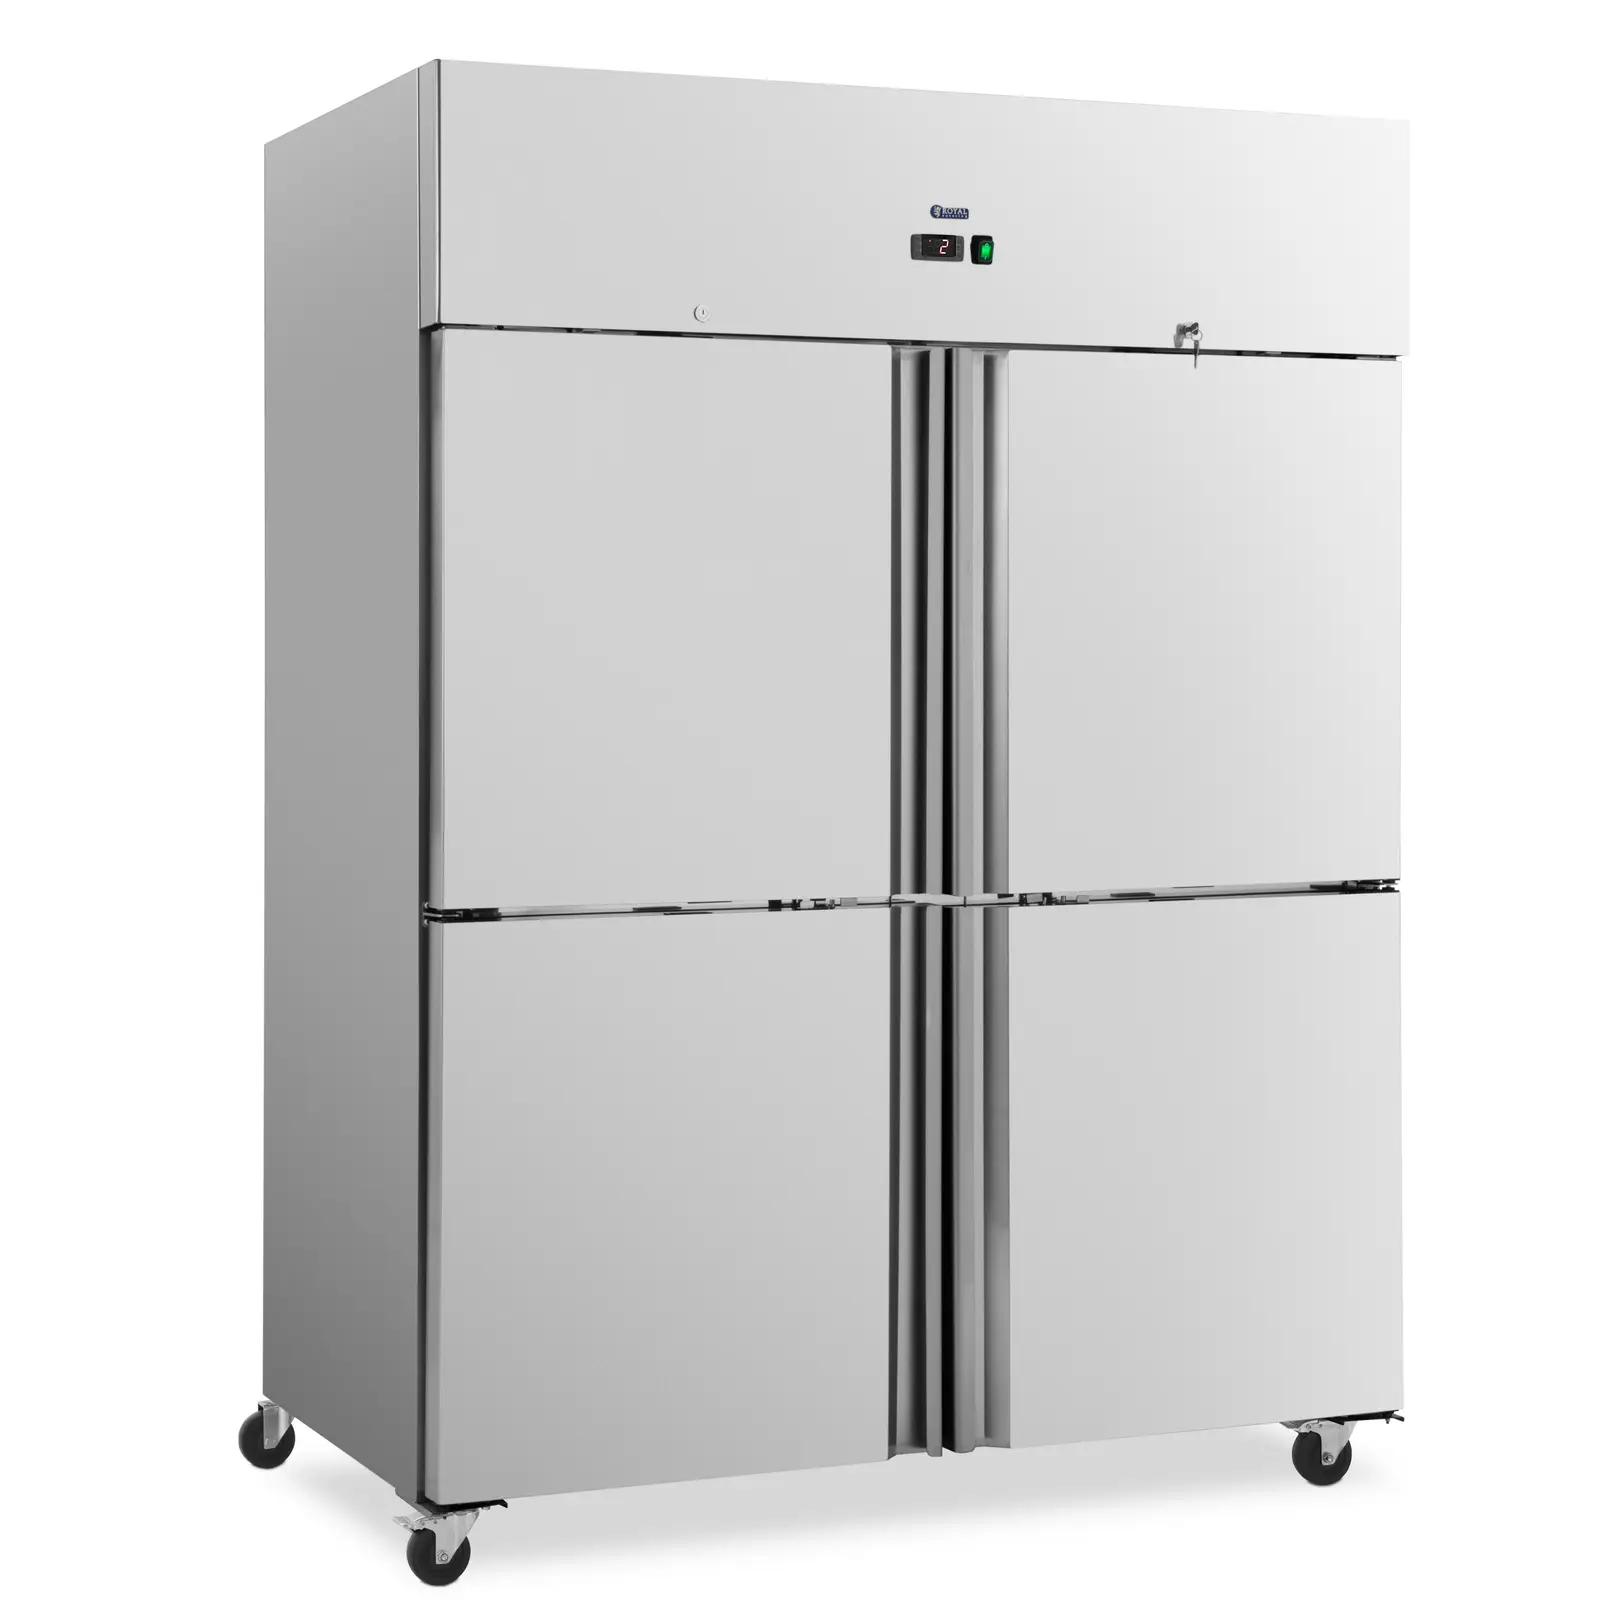 Refrigerador para gastronomía - 1001 L - acero inoxidable - 4 puertas - 4 ruedas - con cerradura - Royal Catering